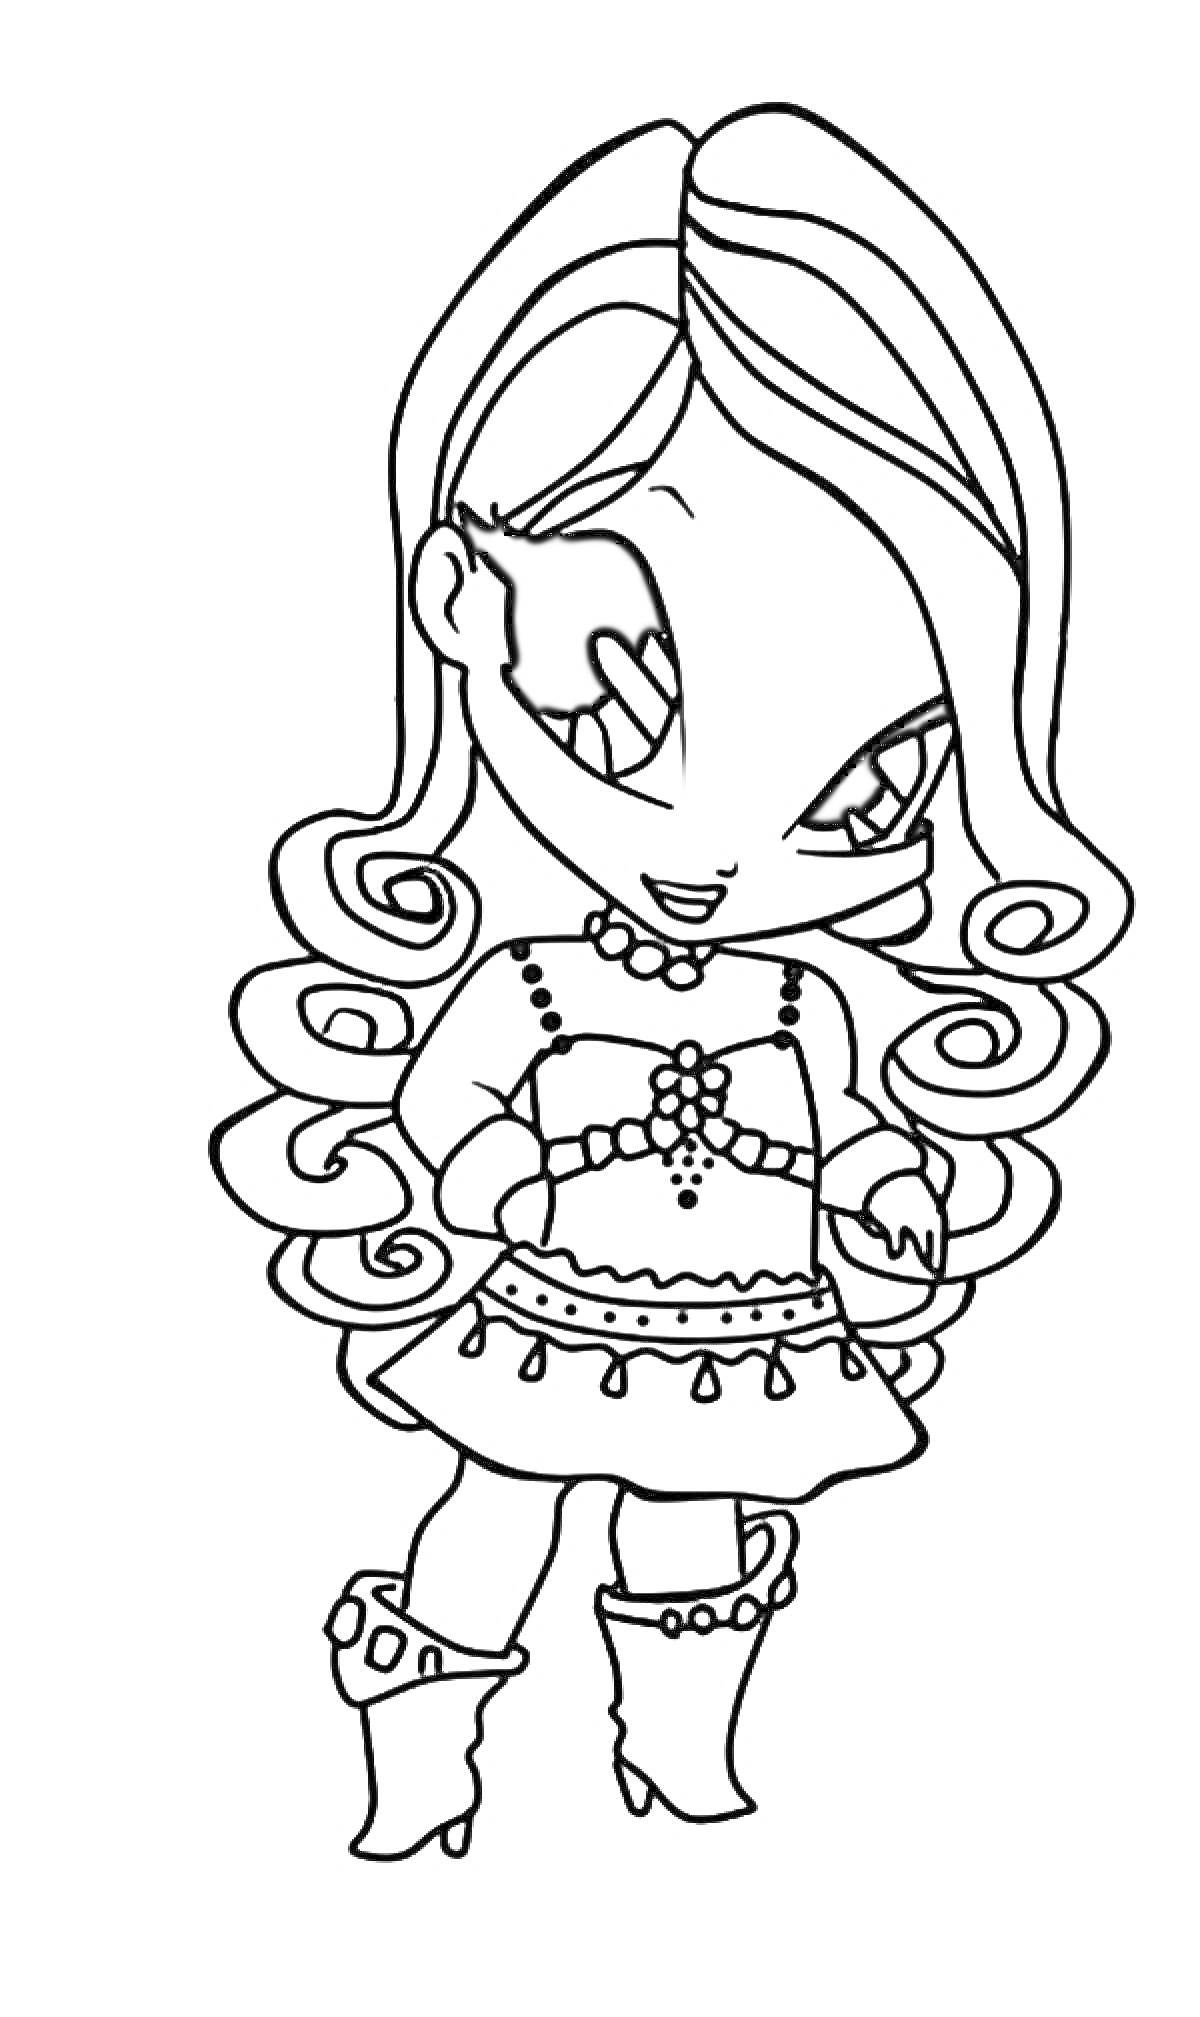 Раскраска Девочка Поппикси с длинными волнистыми волосами, в платье с узором и сапогах на каблуке